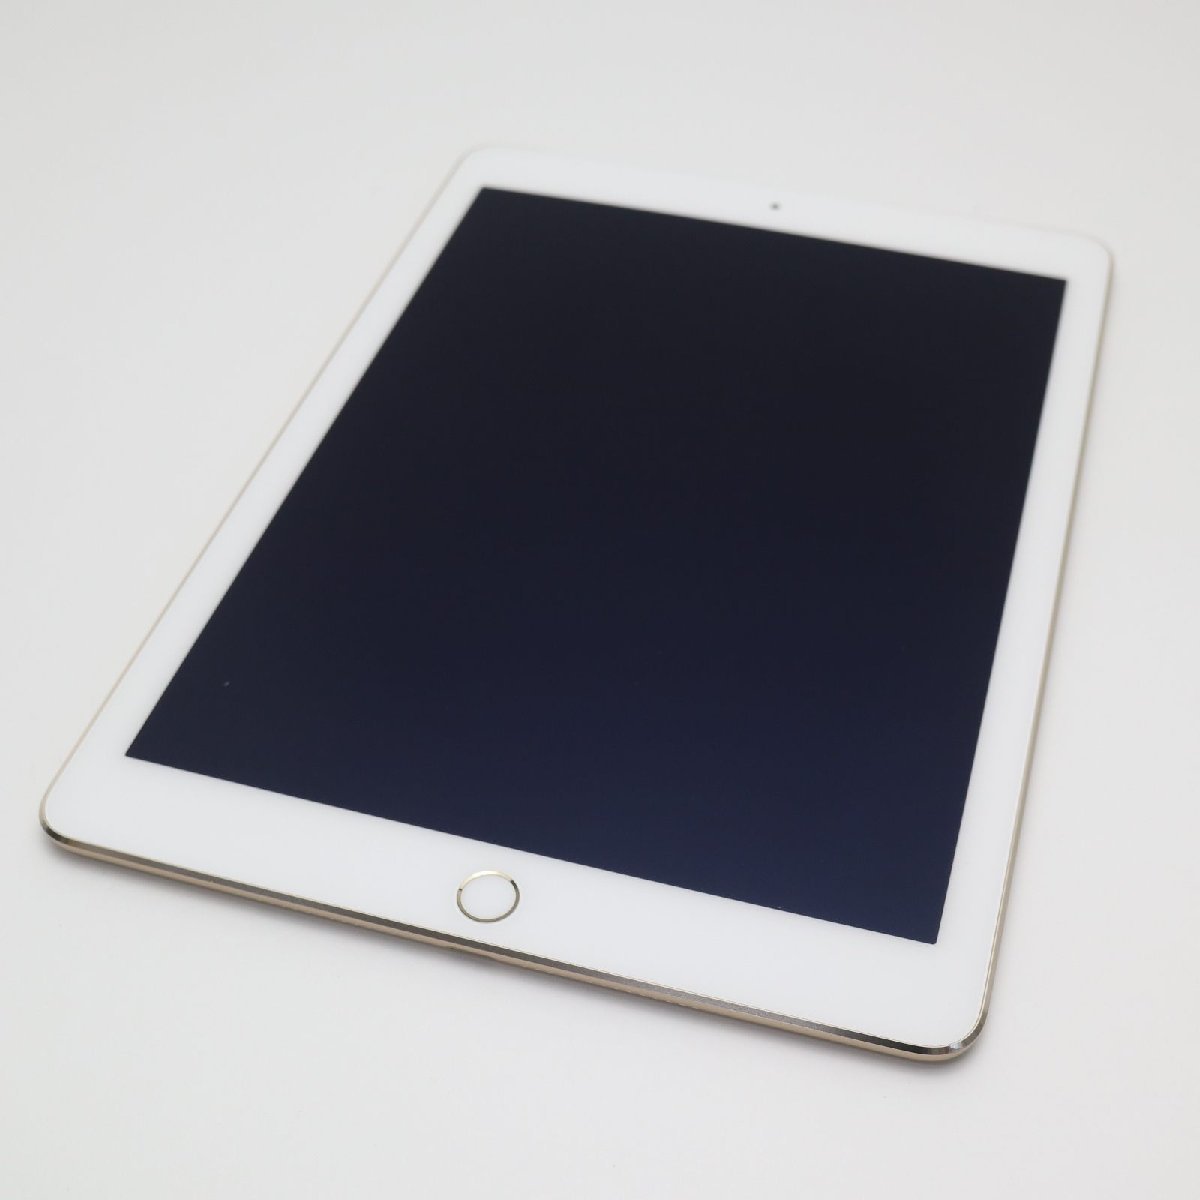 新品同様 SOFTBANK iPad Air 2 Cellular 16GB ゴールド 即日発送 タブレットApple 本体 あすつく 土日祝発送OK_画像1